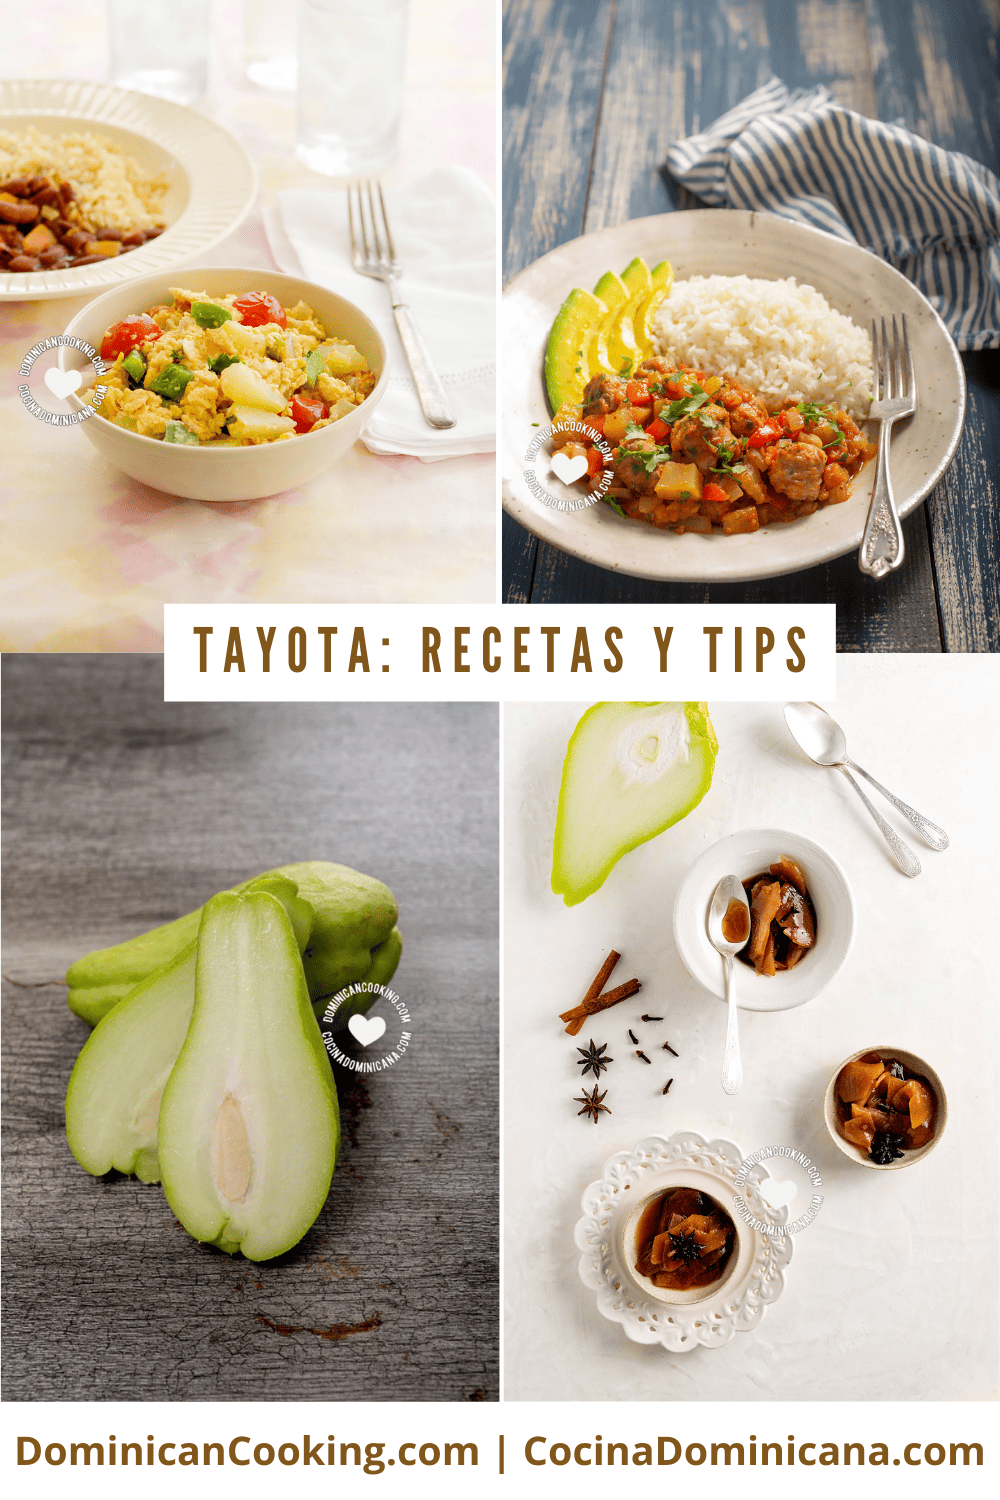 Tayota (chayote) recipes.